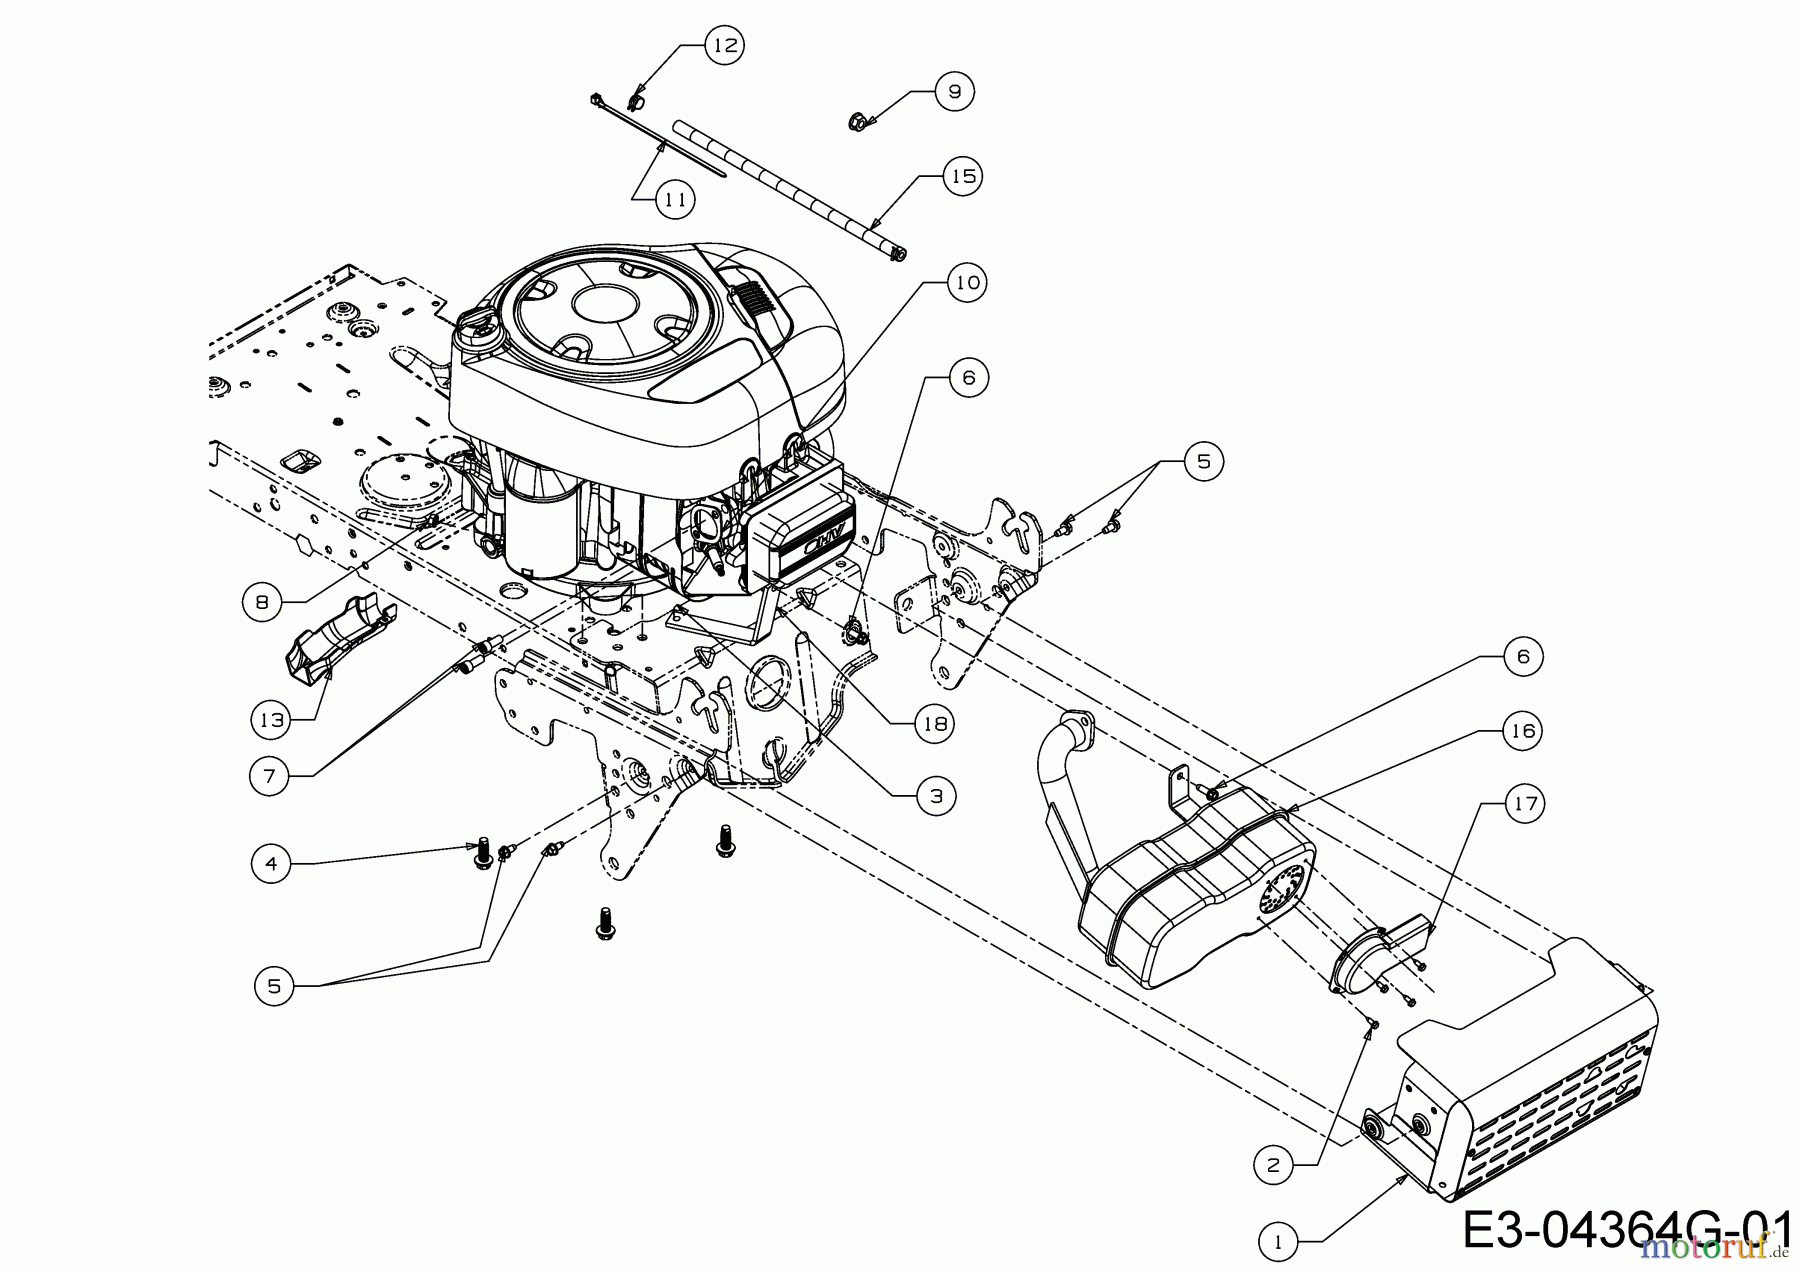  Wolf-Garten Lawn tractors 96.130 T 13HH76WF650  (2017) Engine accessories